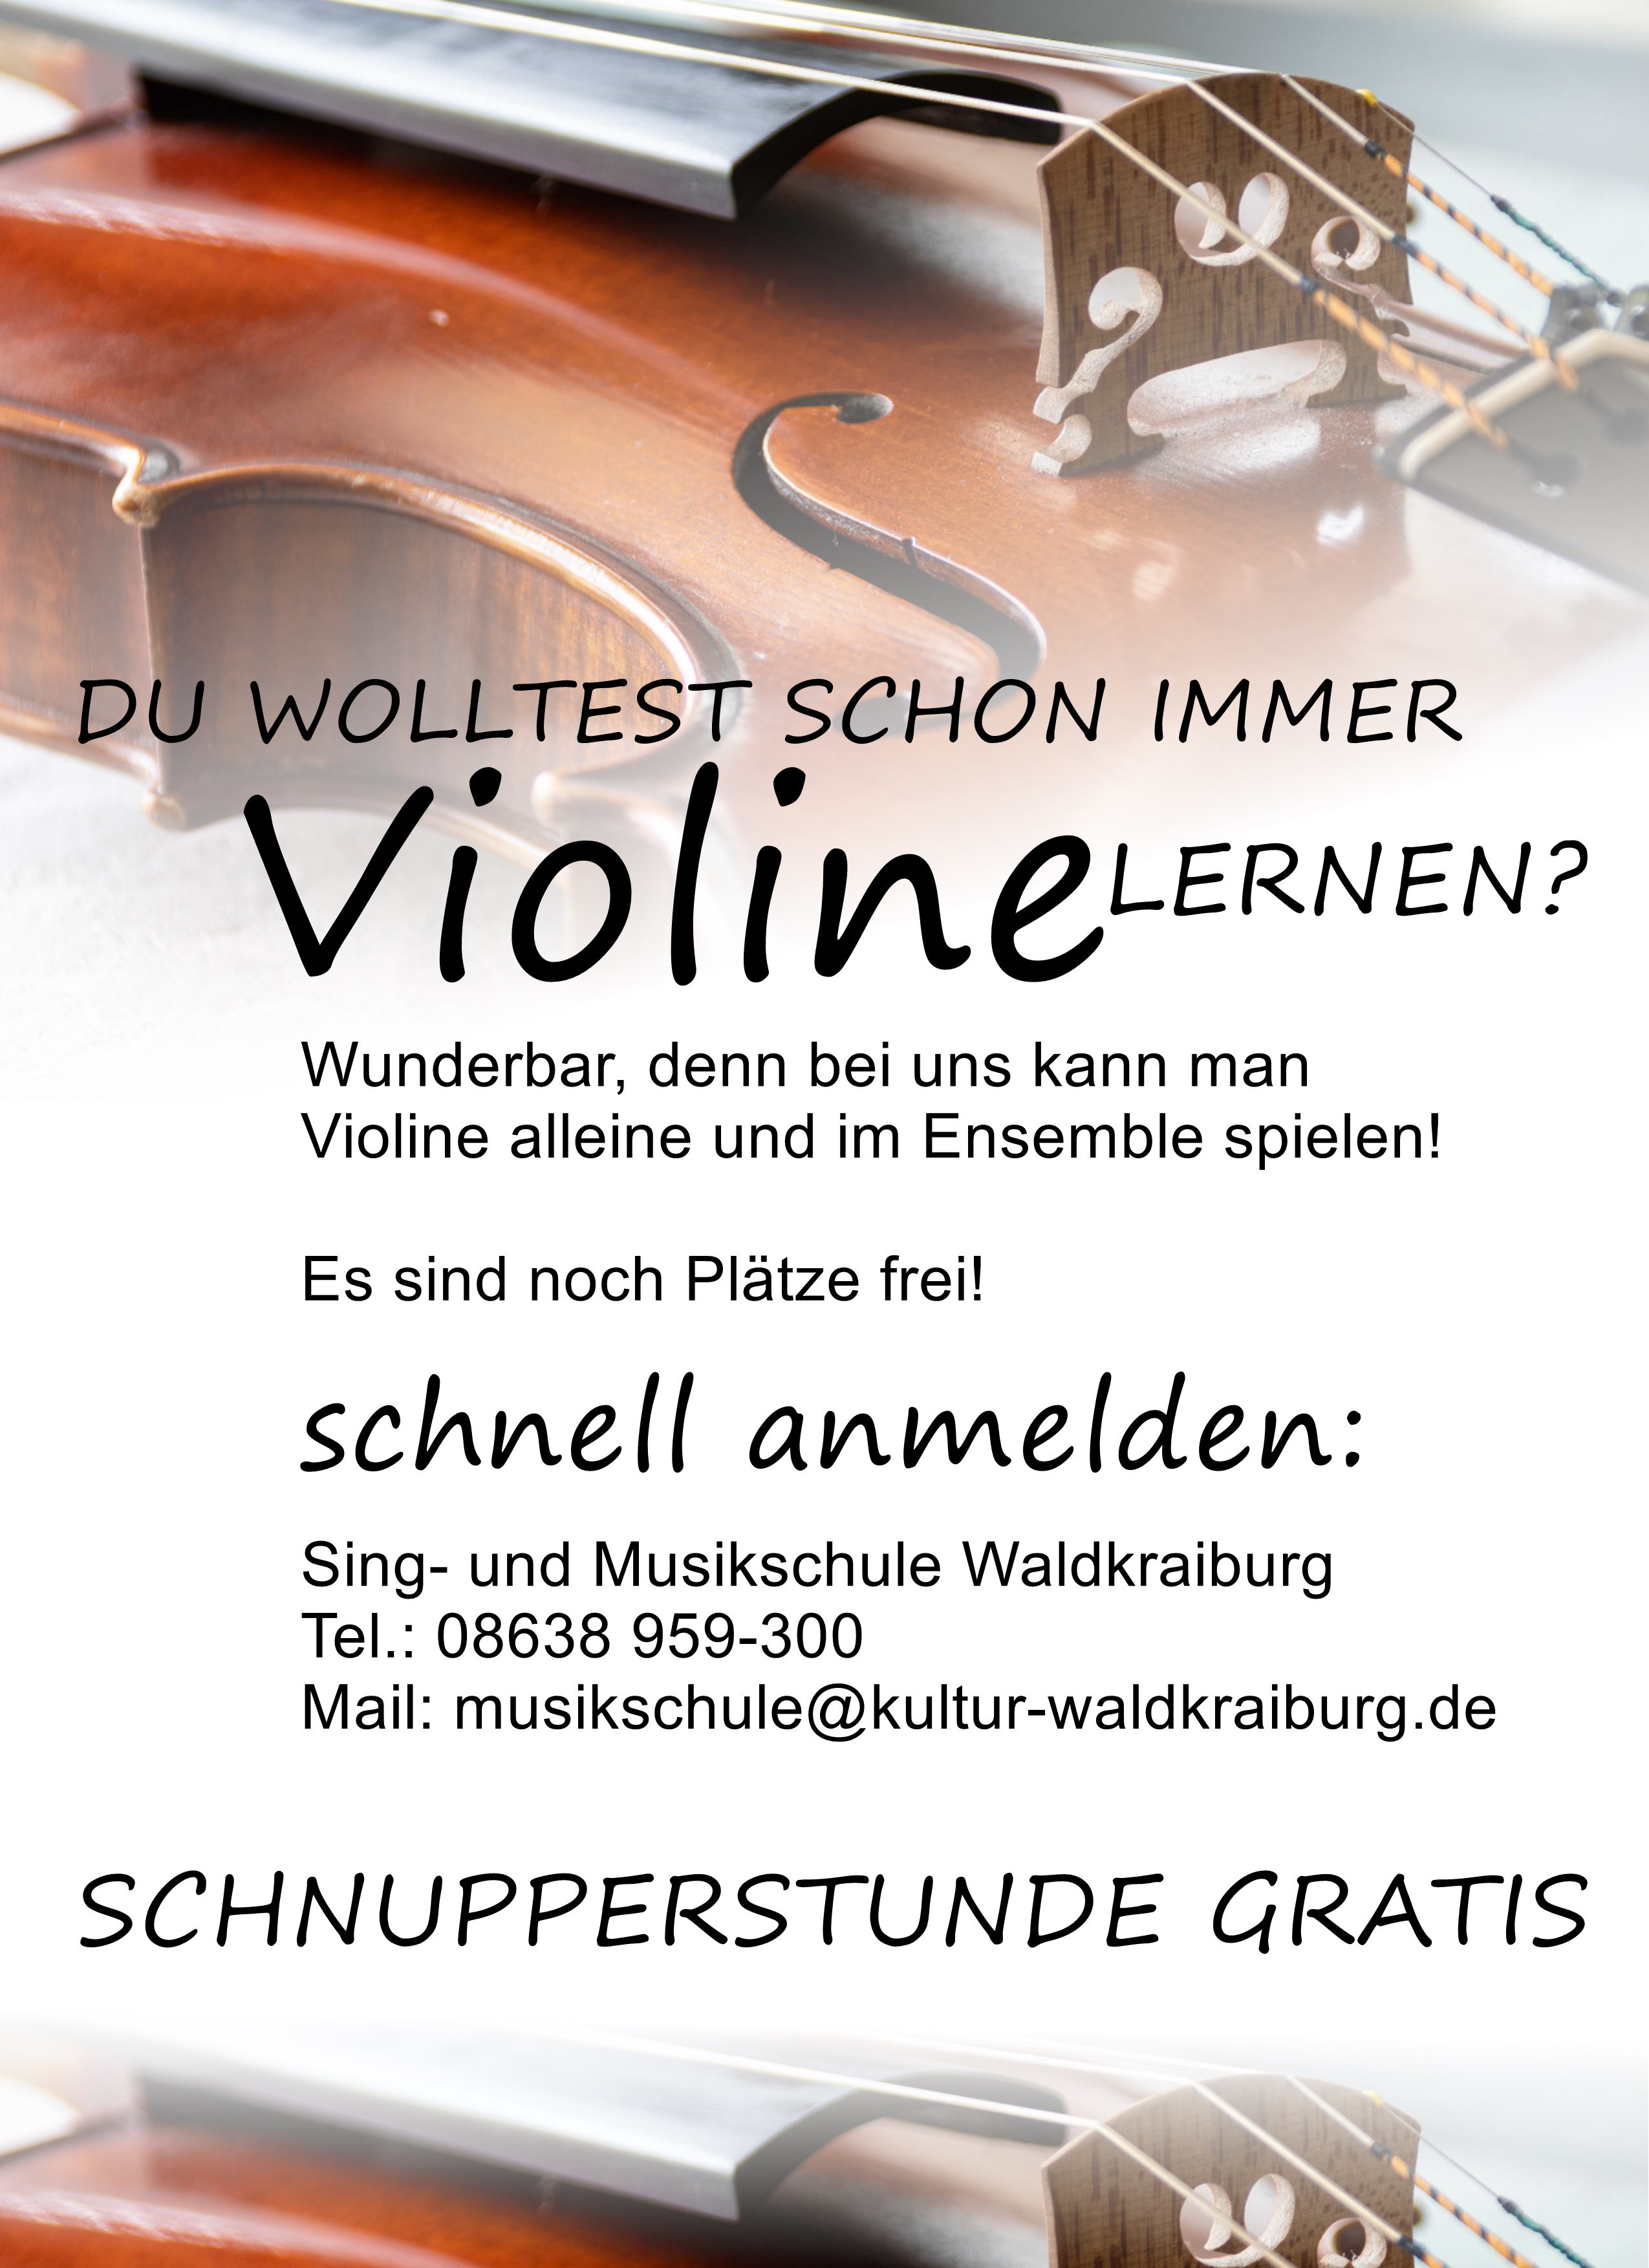 Unterricht im Fach Violine - Es sind noch Plätze frei!